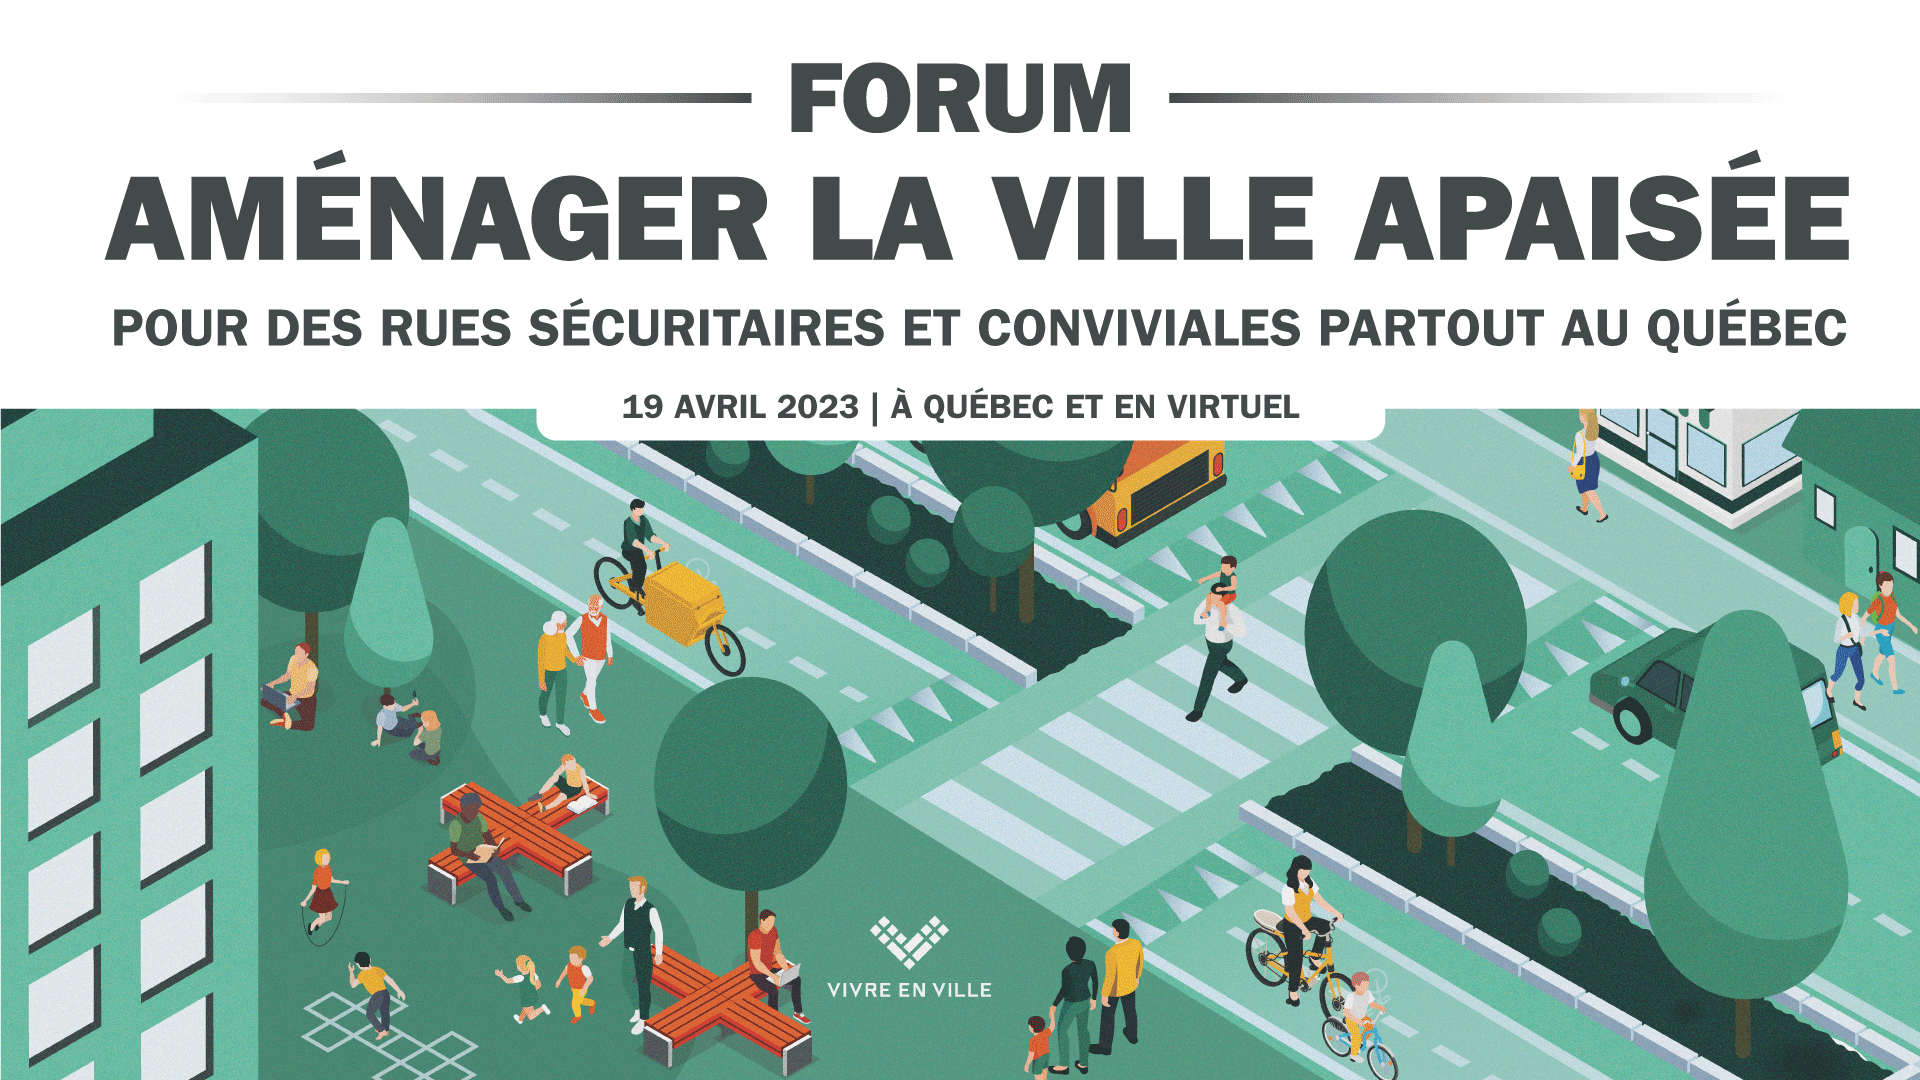 Forum Aménager la ville apaisée : Pour des rues sécuritaires et conviviales partout au Québec